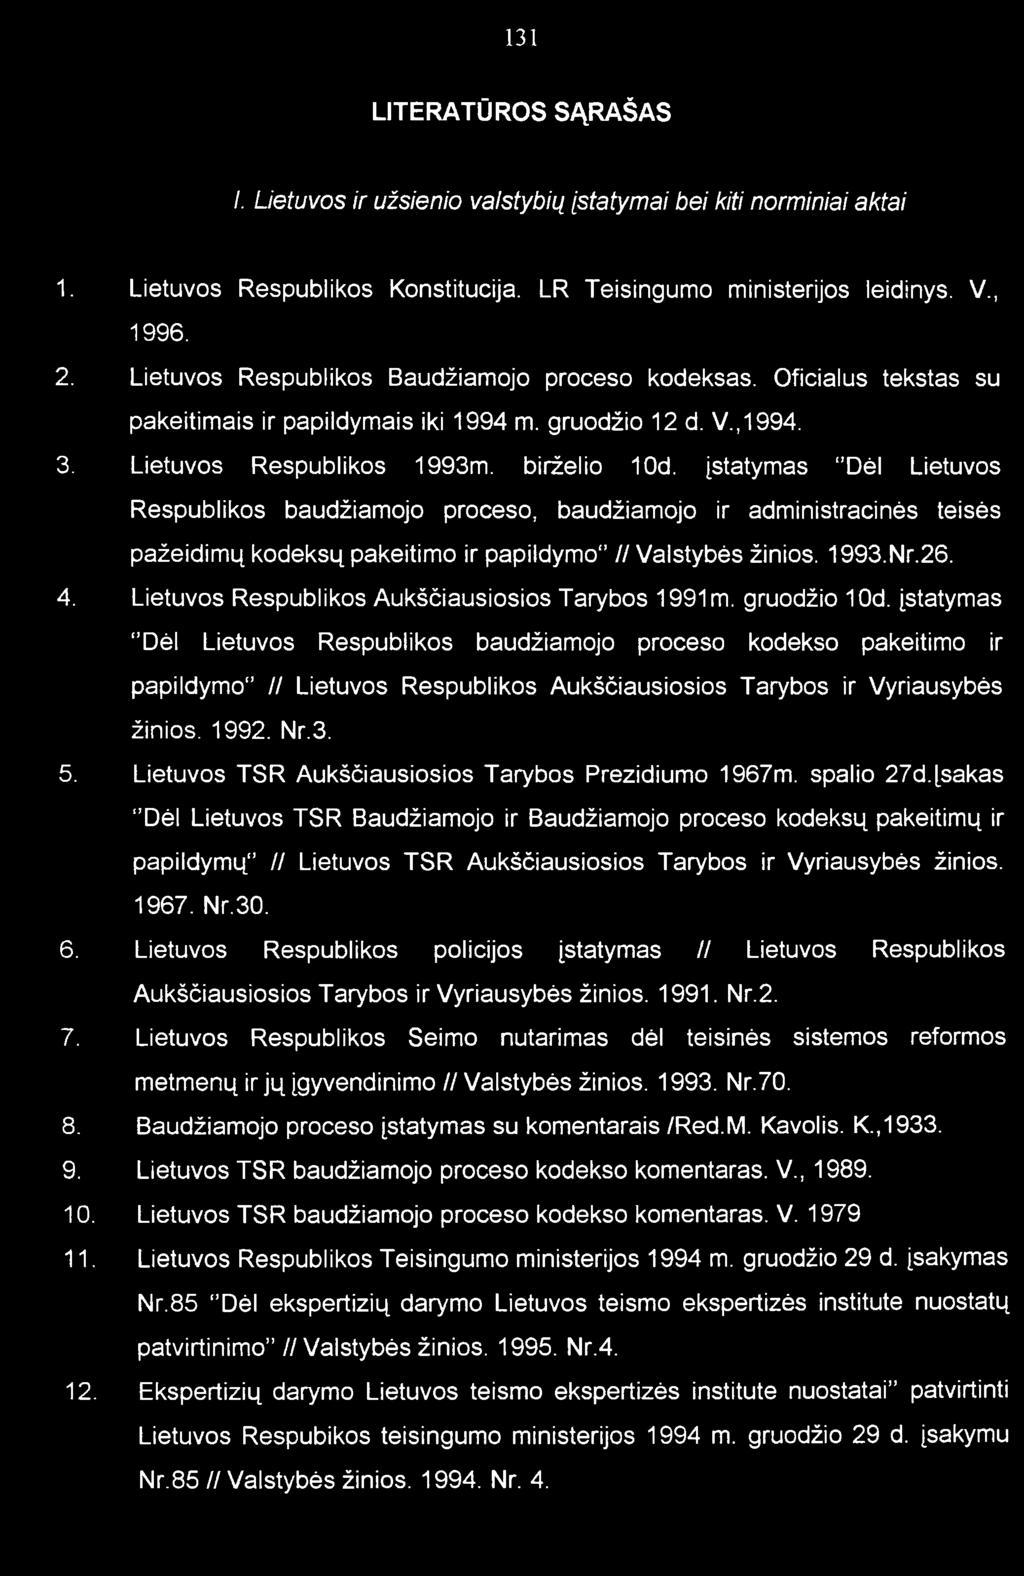 Lietuvos Respublikos 1993m. birželio 10d. įstatymas "Dėl Lietuvos Respublikos baudžiamojo proceso, baudžiamojo ir administracinės tėisės pažeidimų kodeksų pakeitimo ir papildymo // Valstybės žinios.